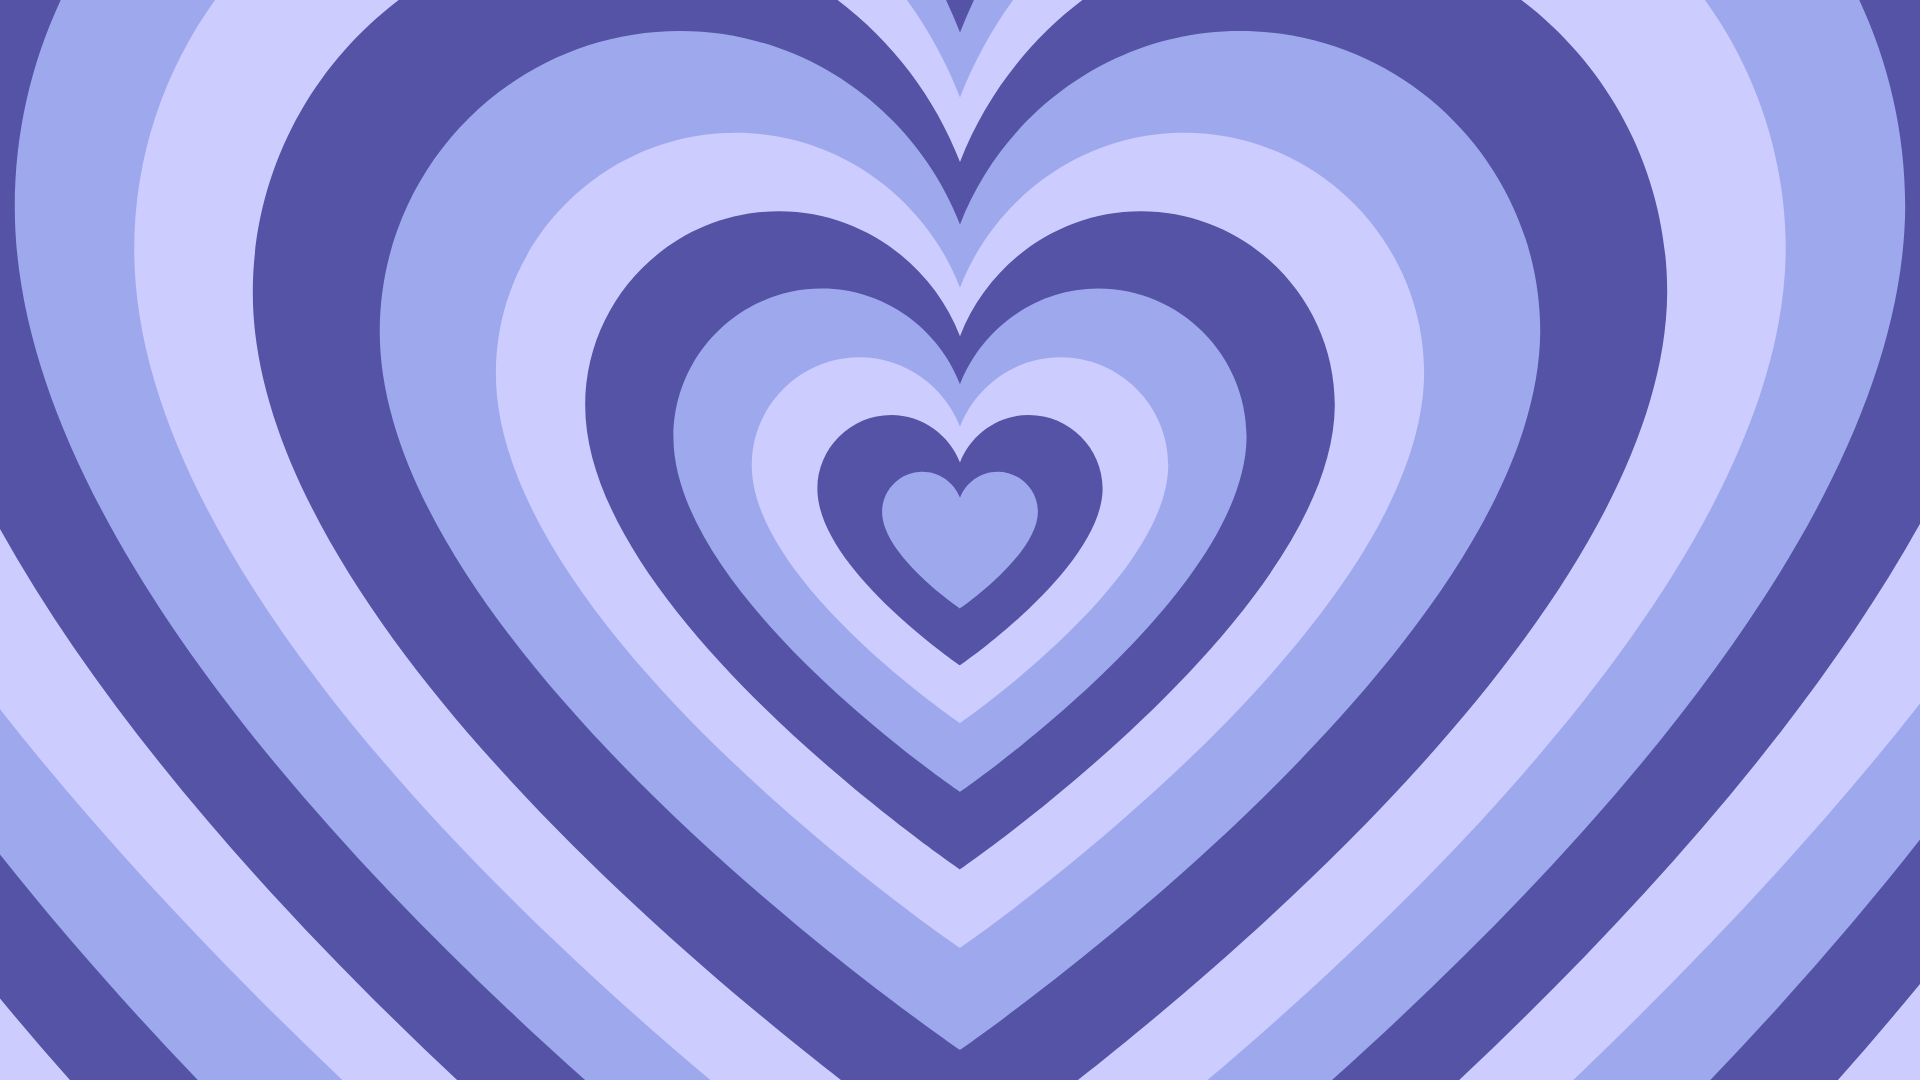 BLUE PERIWINKLE hearts desktop wallpaper